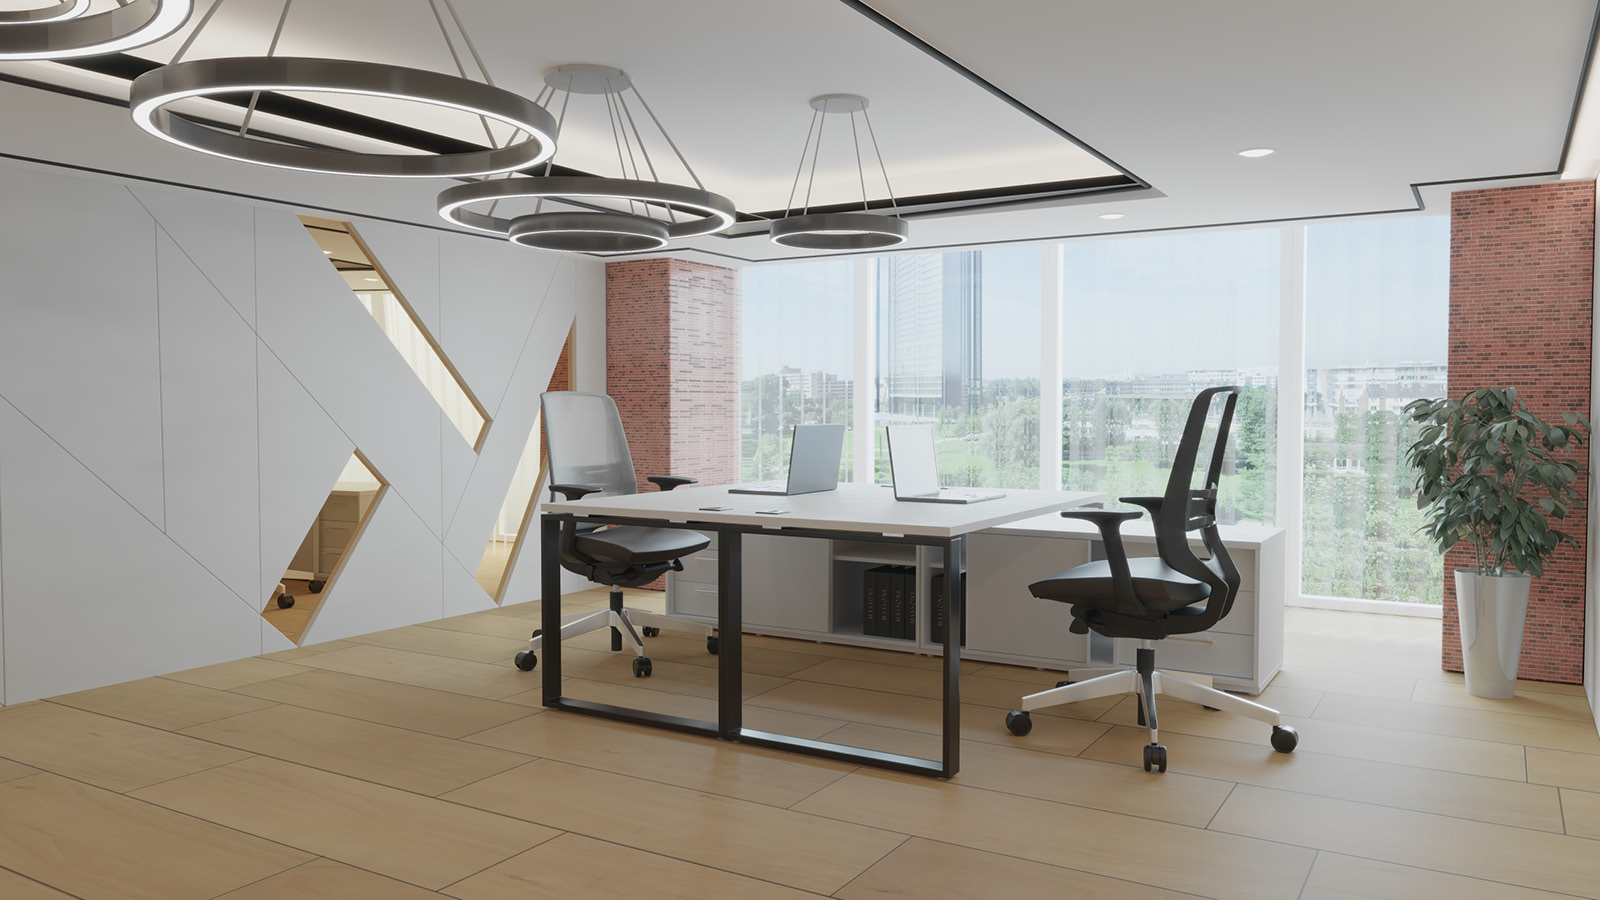 Nowoczesne biuro zostało wyposażone w zestaw do pracy zespołowej - duże biało-czarne biurka z komodami i obrotowymi fotelami.